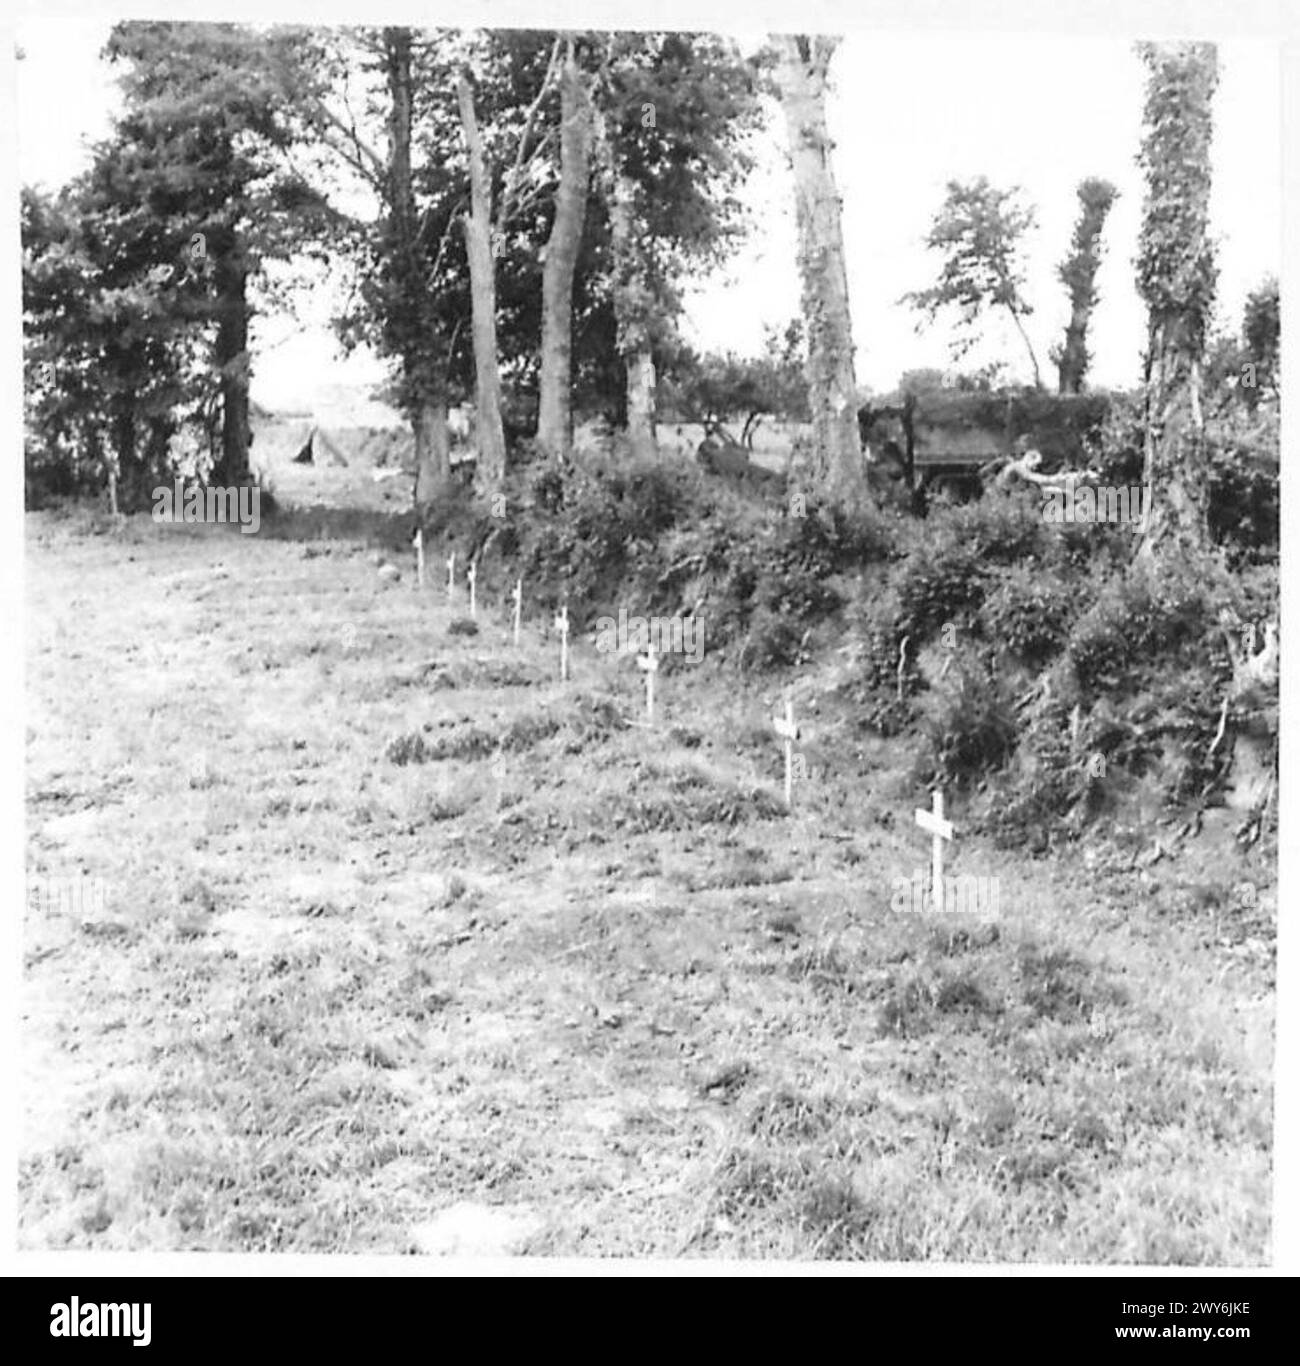 L'ESERCITO BRITANNICO NELL'EUROPA NORDOCCIDENTALE 1944-1945 - Graves di 204 Royal Engineers uccisi dal fuoco di proiettili vicino a Colleville, durante lavori stradali. , British Army, 21st Army Group Foto Stock